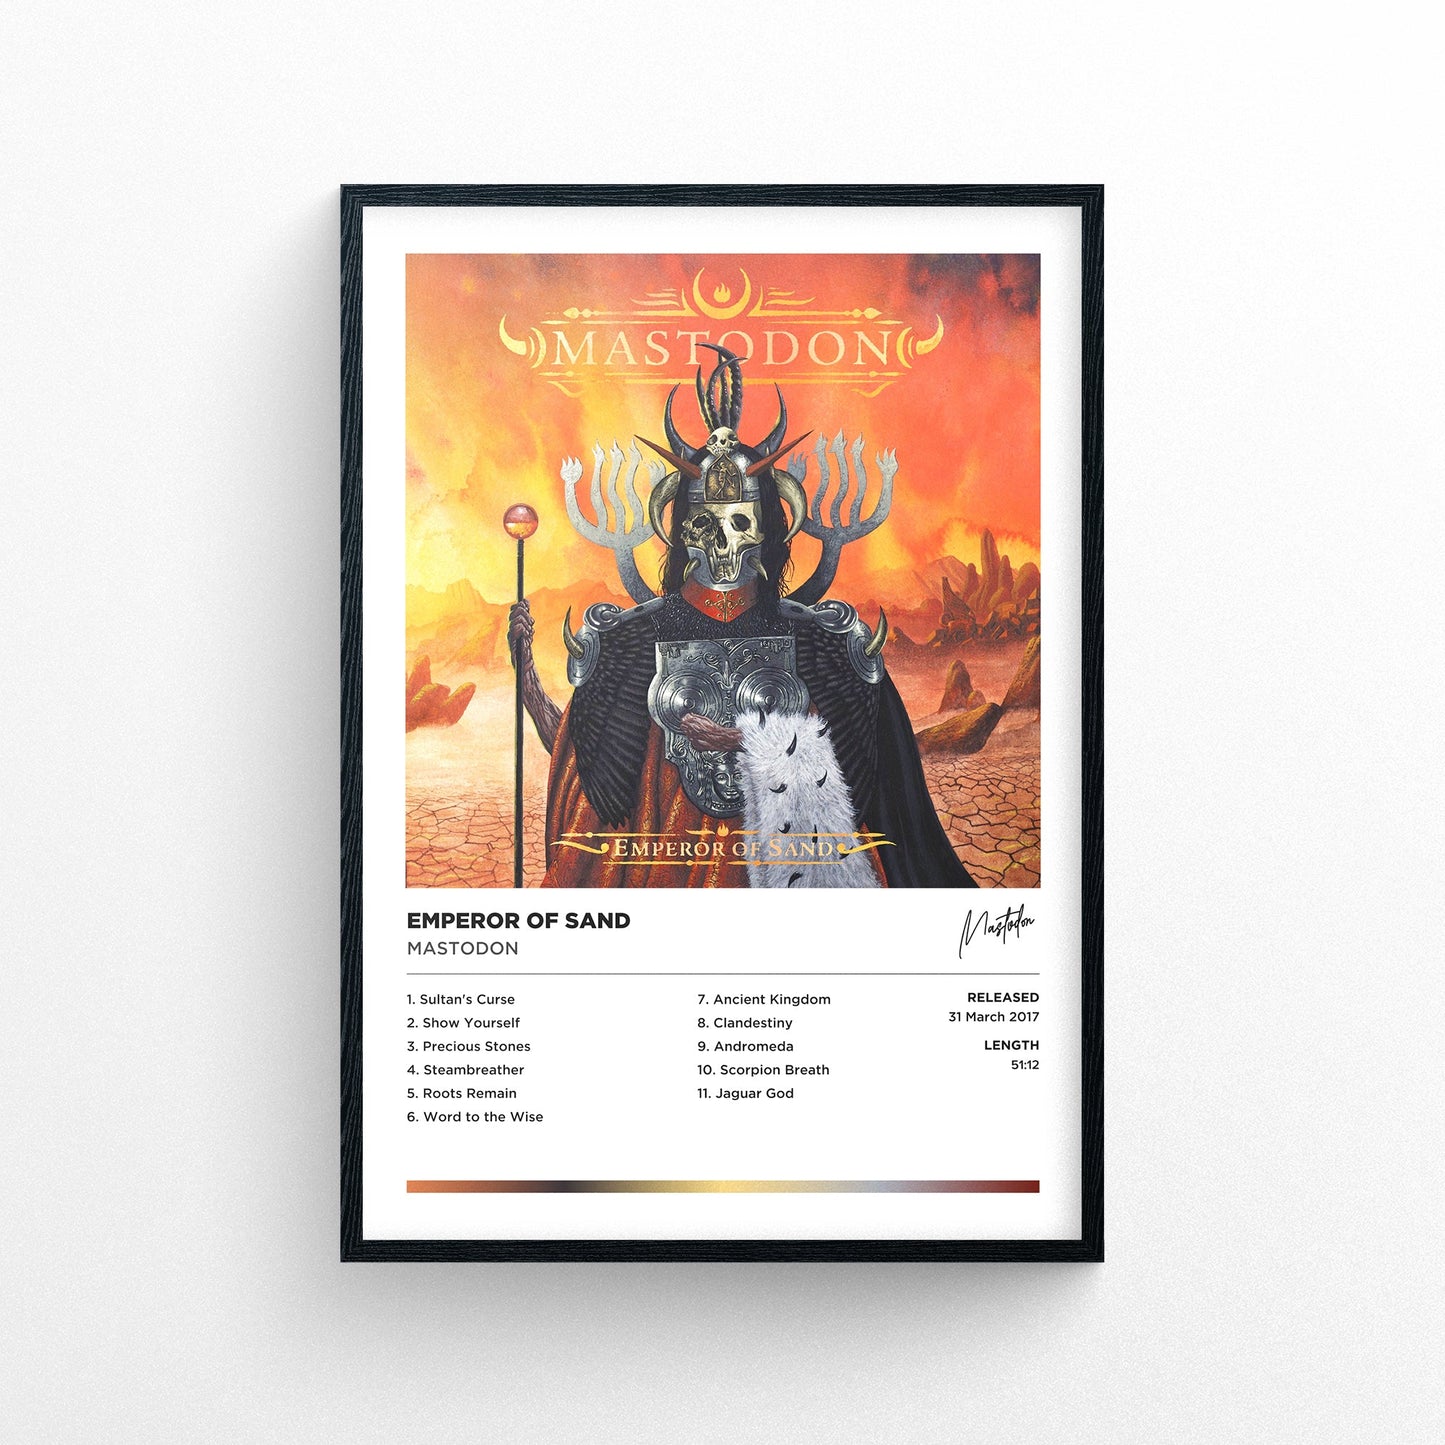 Mastodon - Emperor of Sand Framed Poster Print | Polaroid Style | Album Cover Artwork